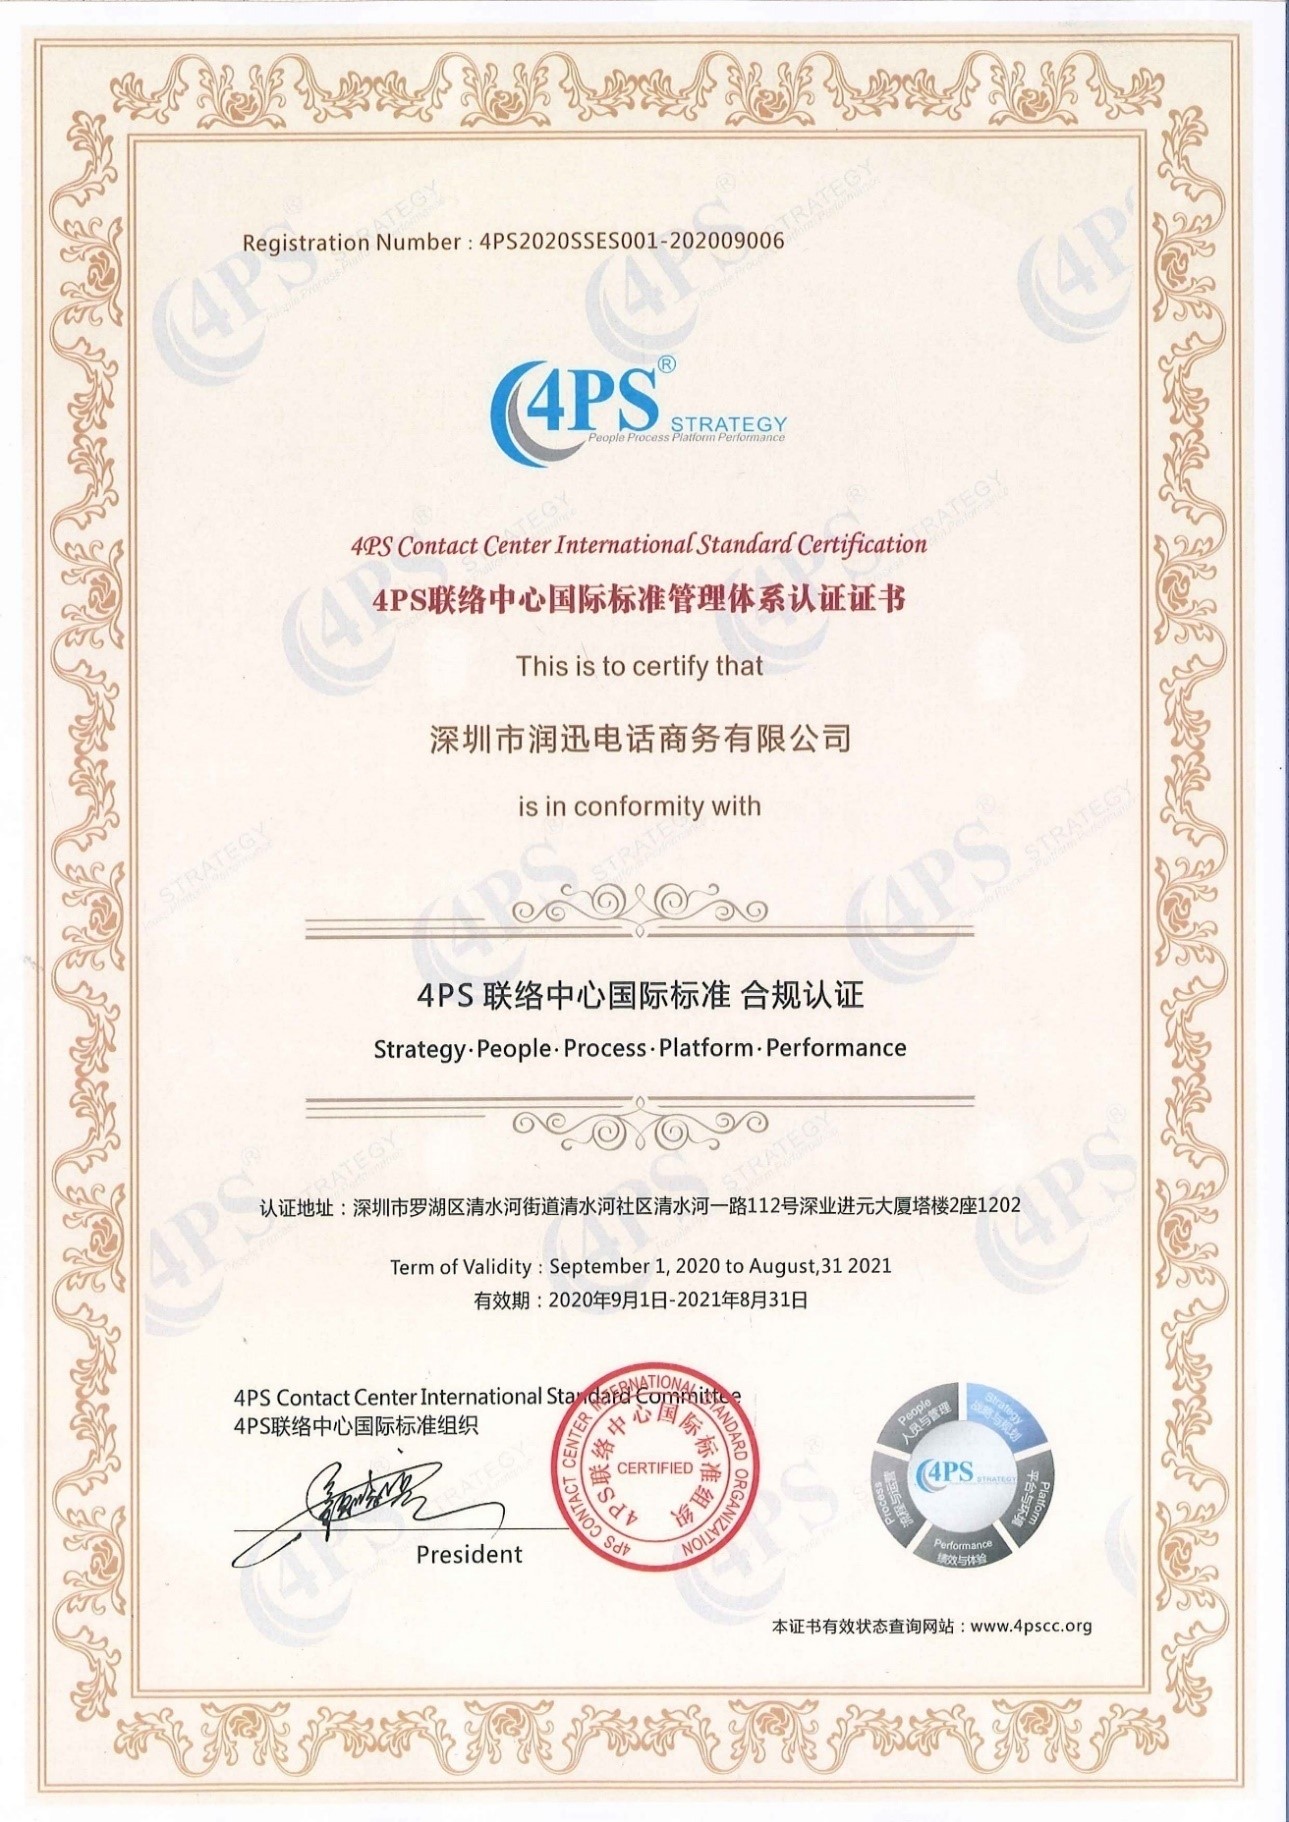 星空体育4PS联络中心国际标准管理体系认证证书